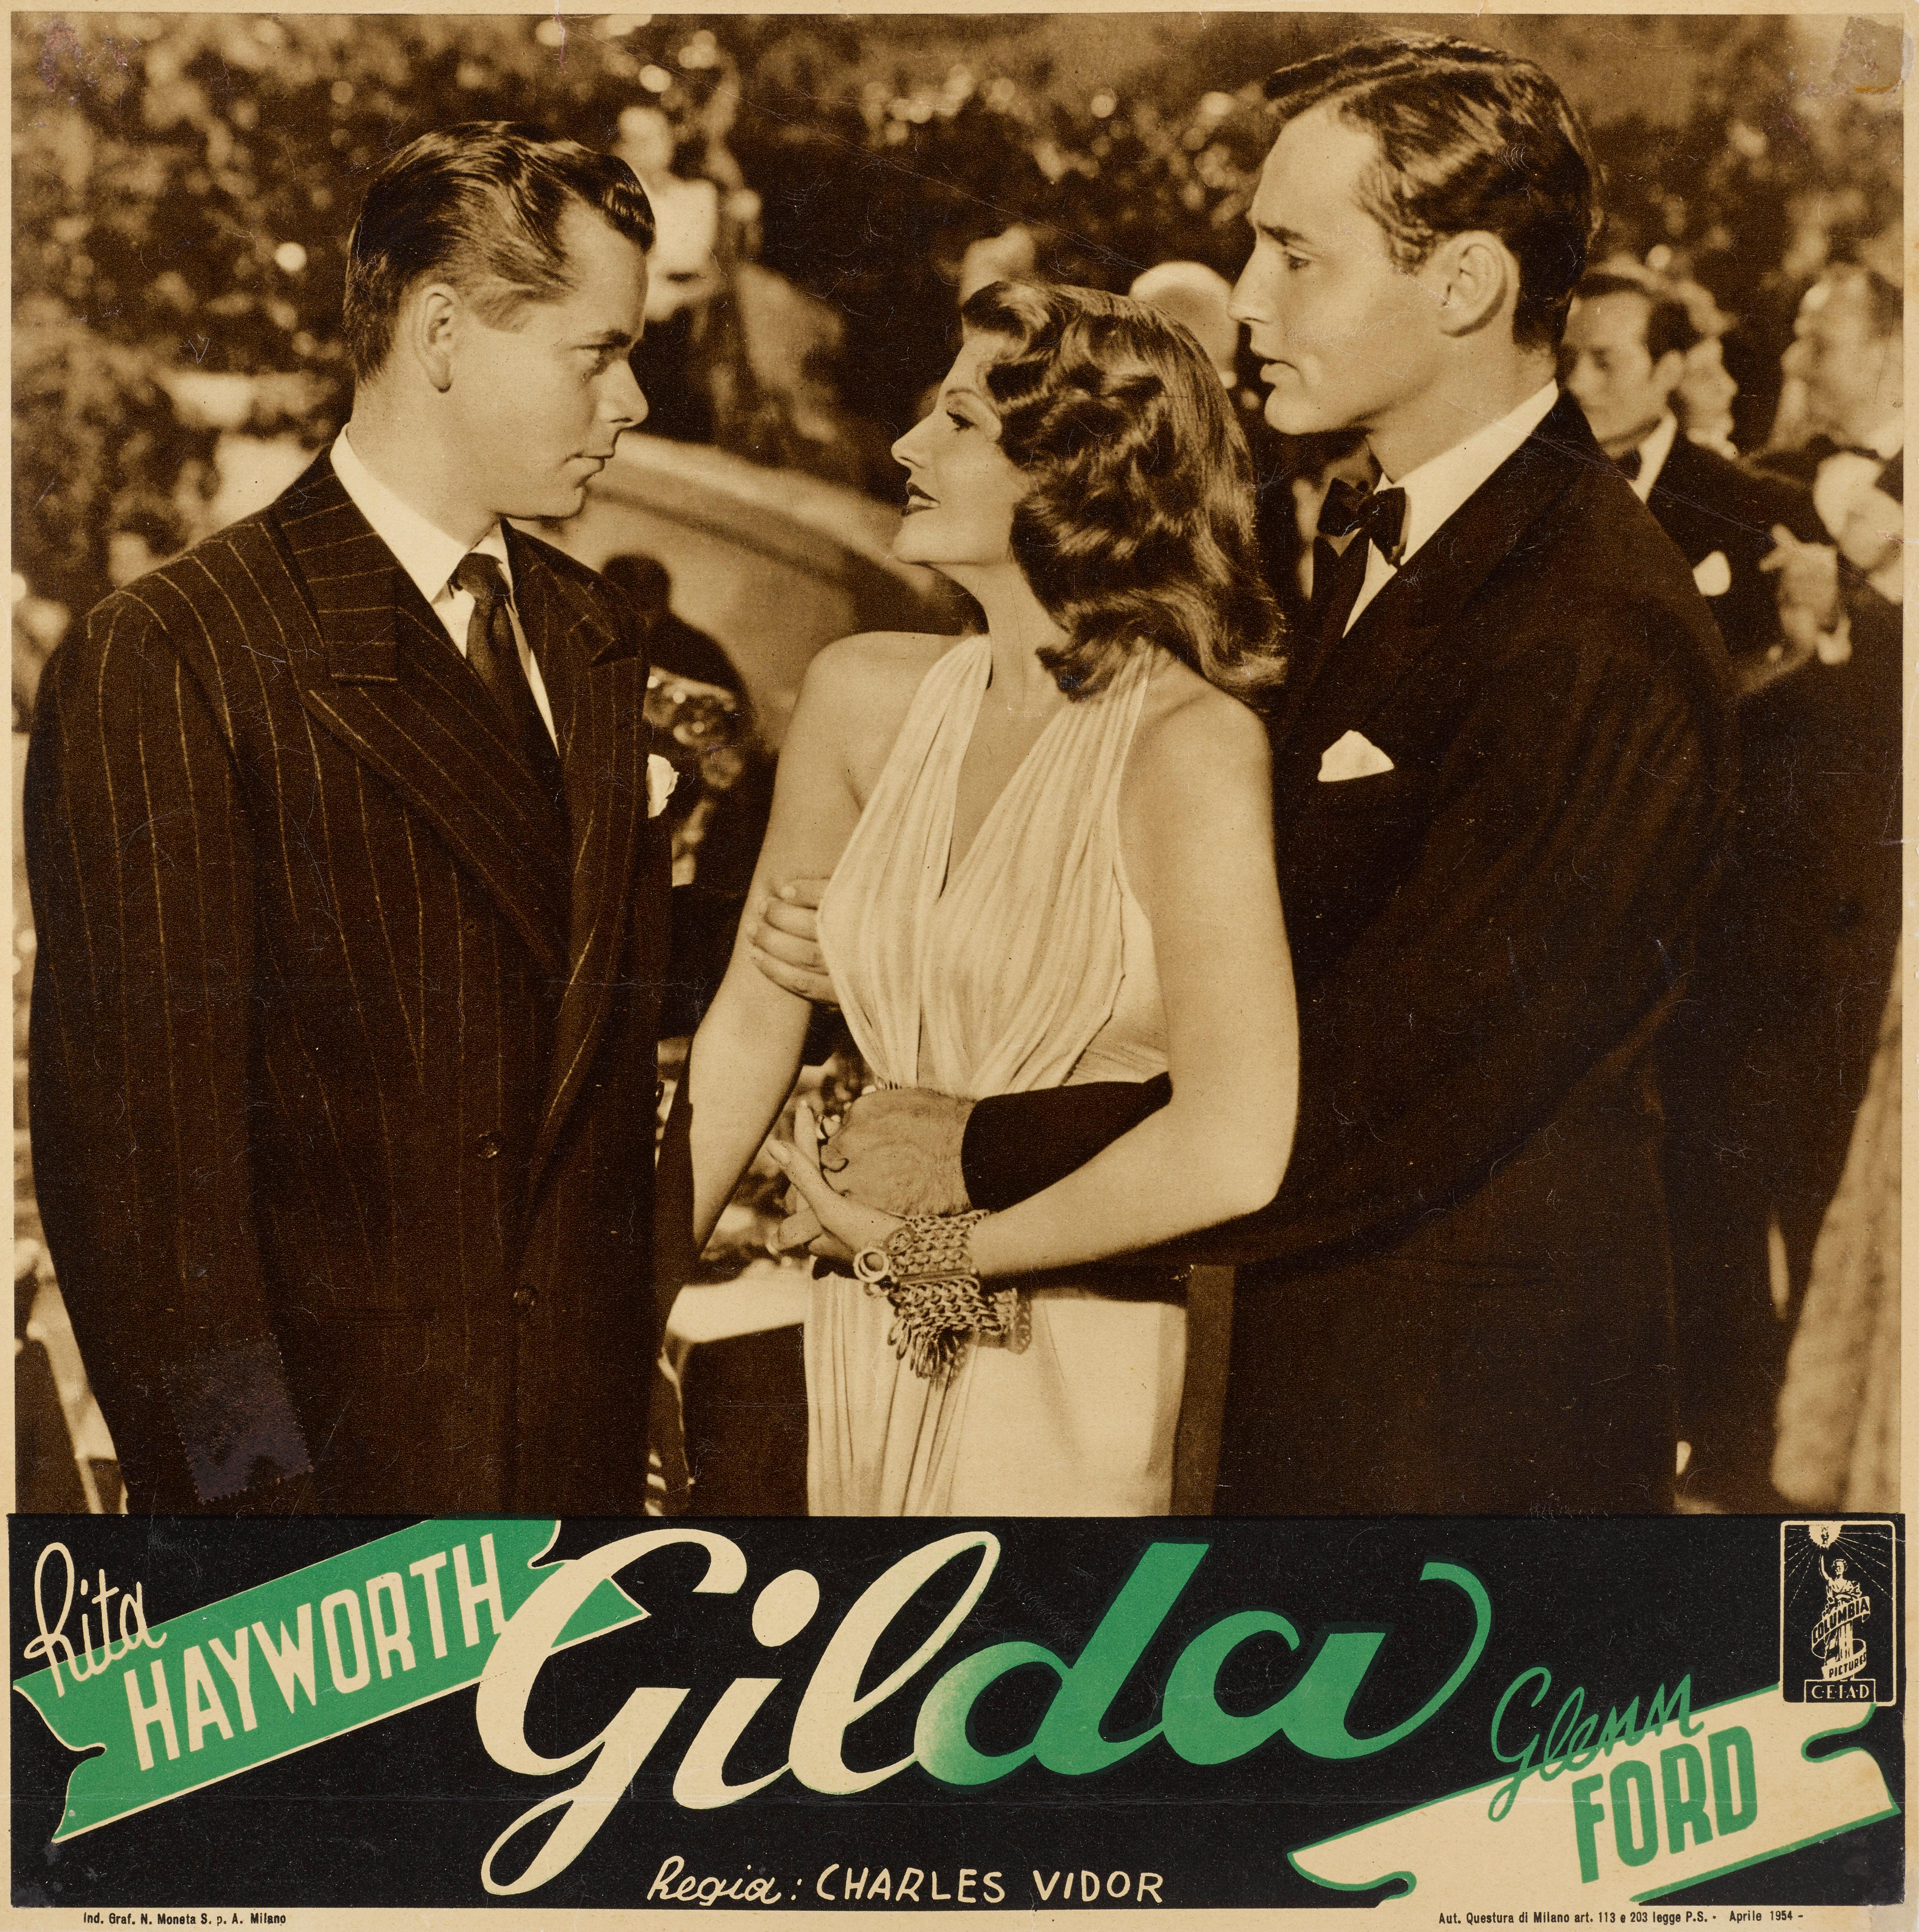 Affiche originale de film italien conçue pour être utilisée dans le hall d'entrée des cinémas. Ce film noir classique de 1946 met en vedette Rita Hayworth et Glenn Ford et a été réalisé par Charles Vidor.